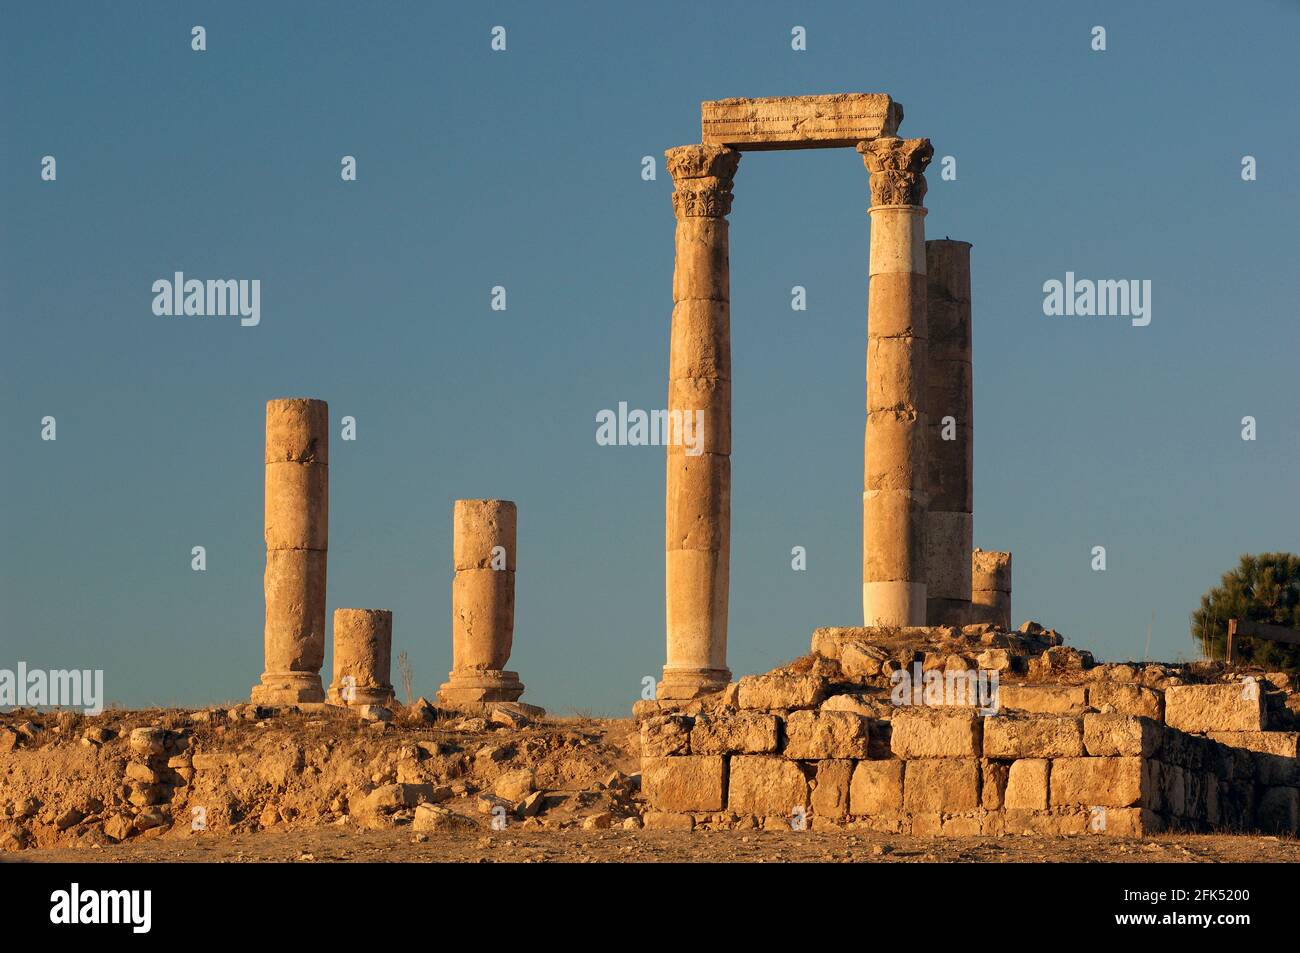 Western Asia, Levant, Arabian Peninsula, Jordanien, Jordan, Amman, Citadel, Archeological Site,Roman Temple of Hercules Stock Photo